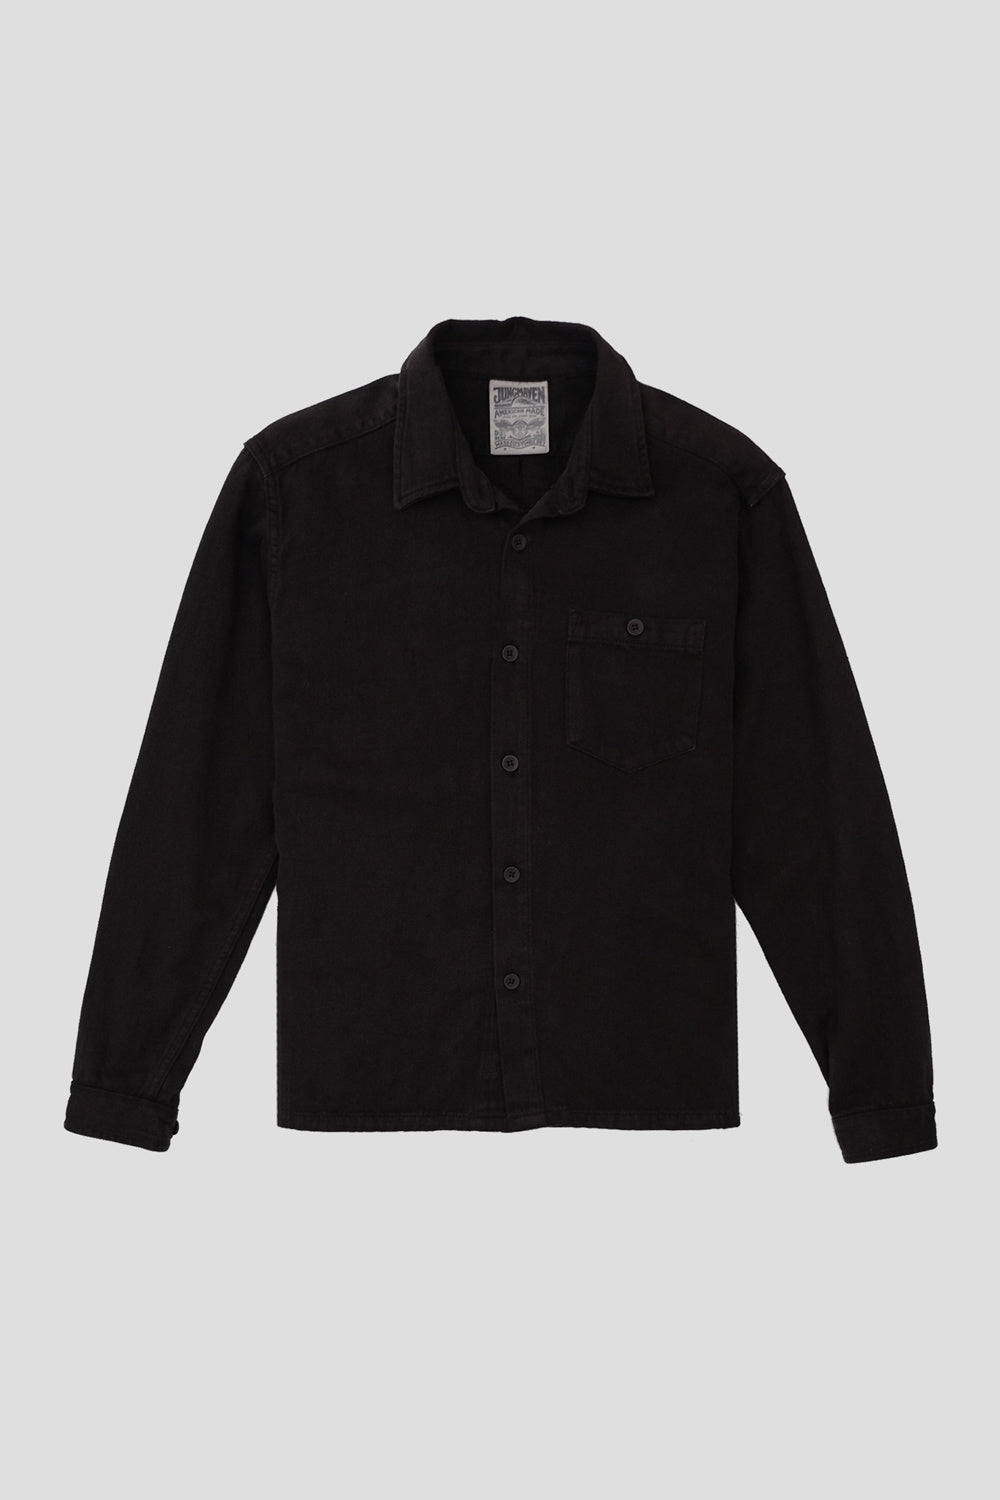 Black Short Sleeve Utility Denim Shirt Dress | New Look | Denim shirt  dress, Shirt dress, Black shorts